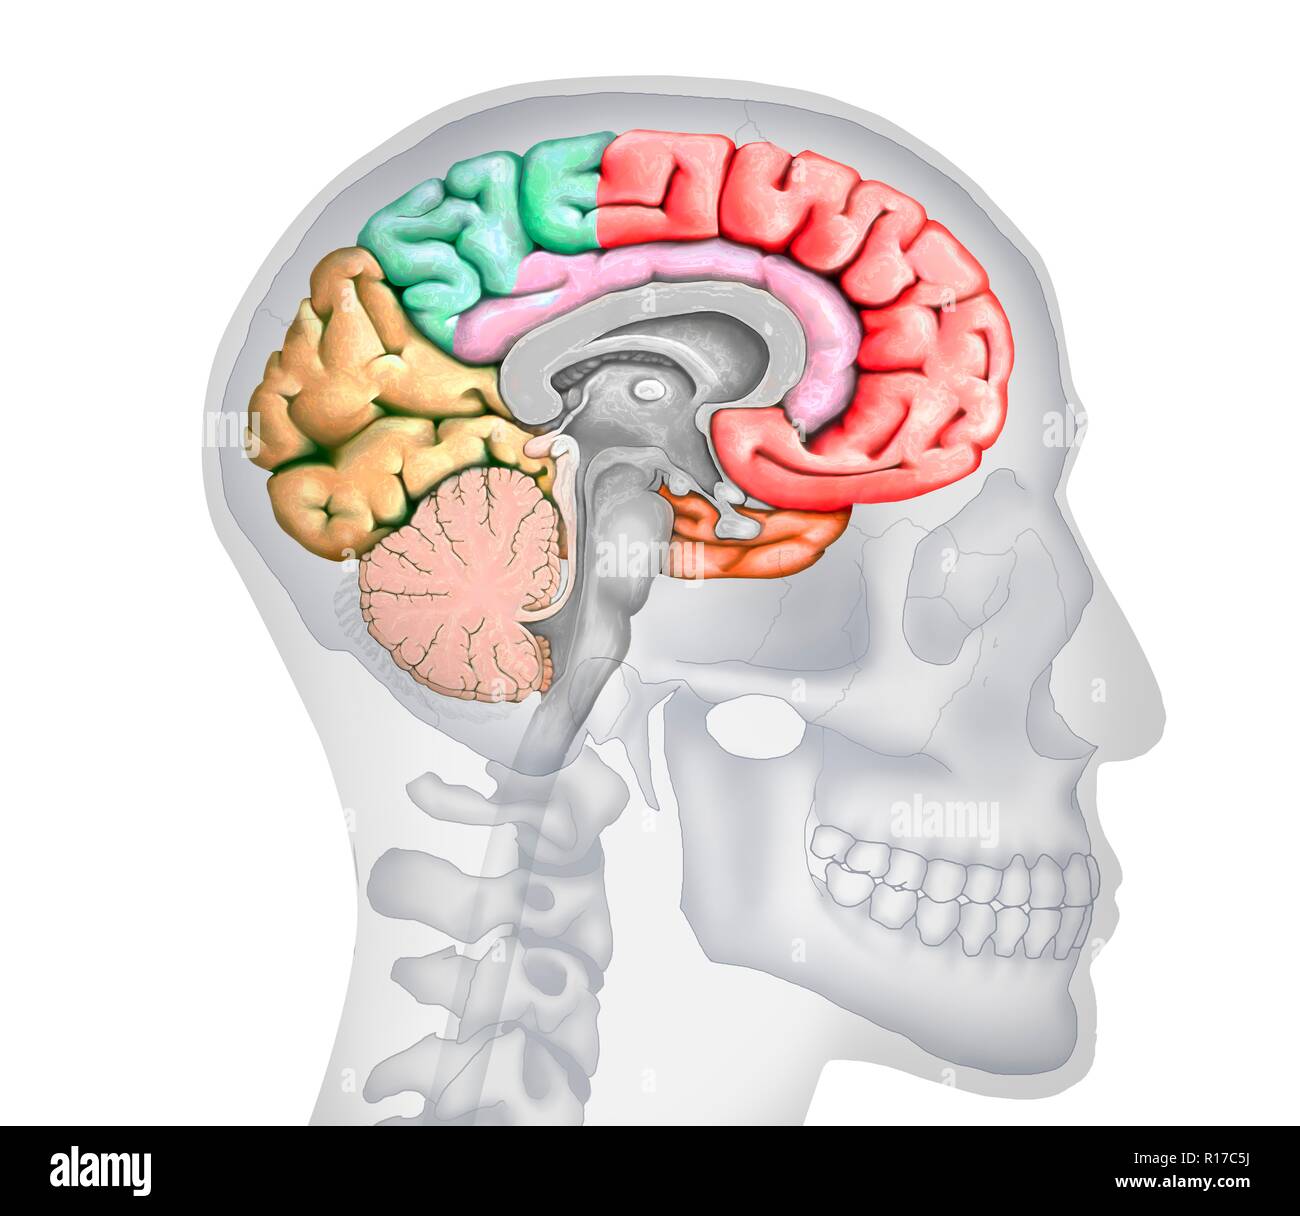 Abbildung: einen Querschnitt des Gehirns zeigt die verschiedenen Nocken. Die Nocken sind in verschiedenen Farben - rot (frontal), Grün (PARIETAL), Gelb (Okzipitalen), Orange (zeitliche) gezeigt, und Rosa (limbic). Ebenfalls dargestellt sind die verschiedenen Ventrikel, der Hirnstamm, thalamus und Hypothalamus, das Kleinhirn, die Hypophyse und den Corpus callosum. Der Hintergrund zeigt die Silhouette eines menschlichen Schädel und Kopf. Stockfoto